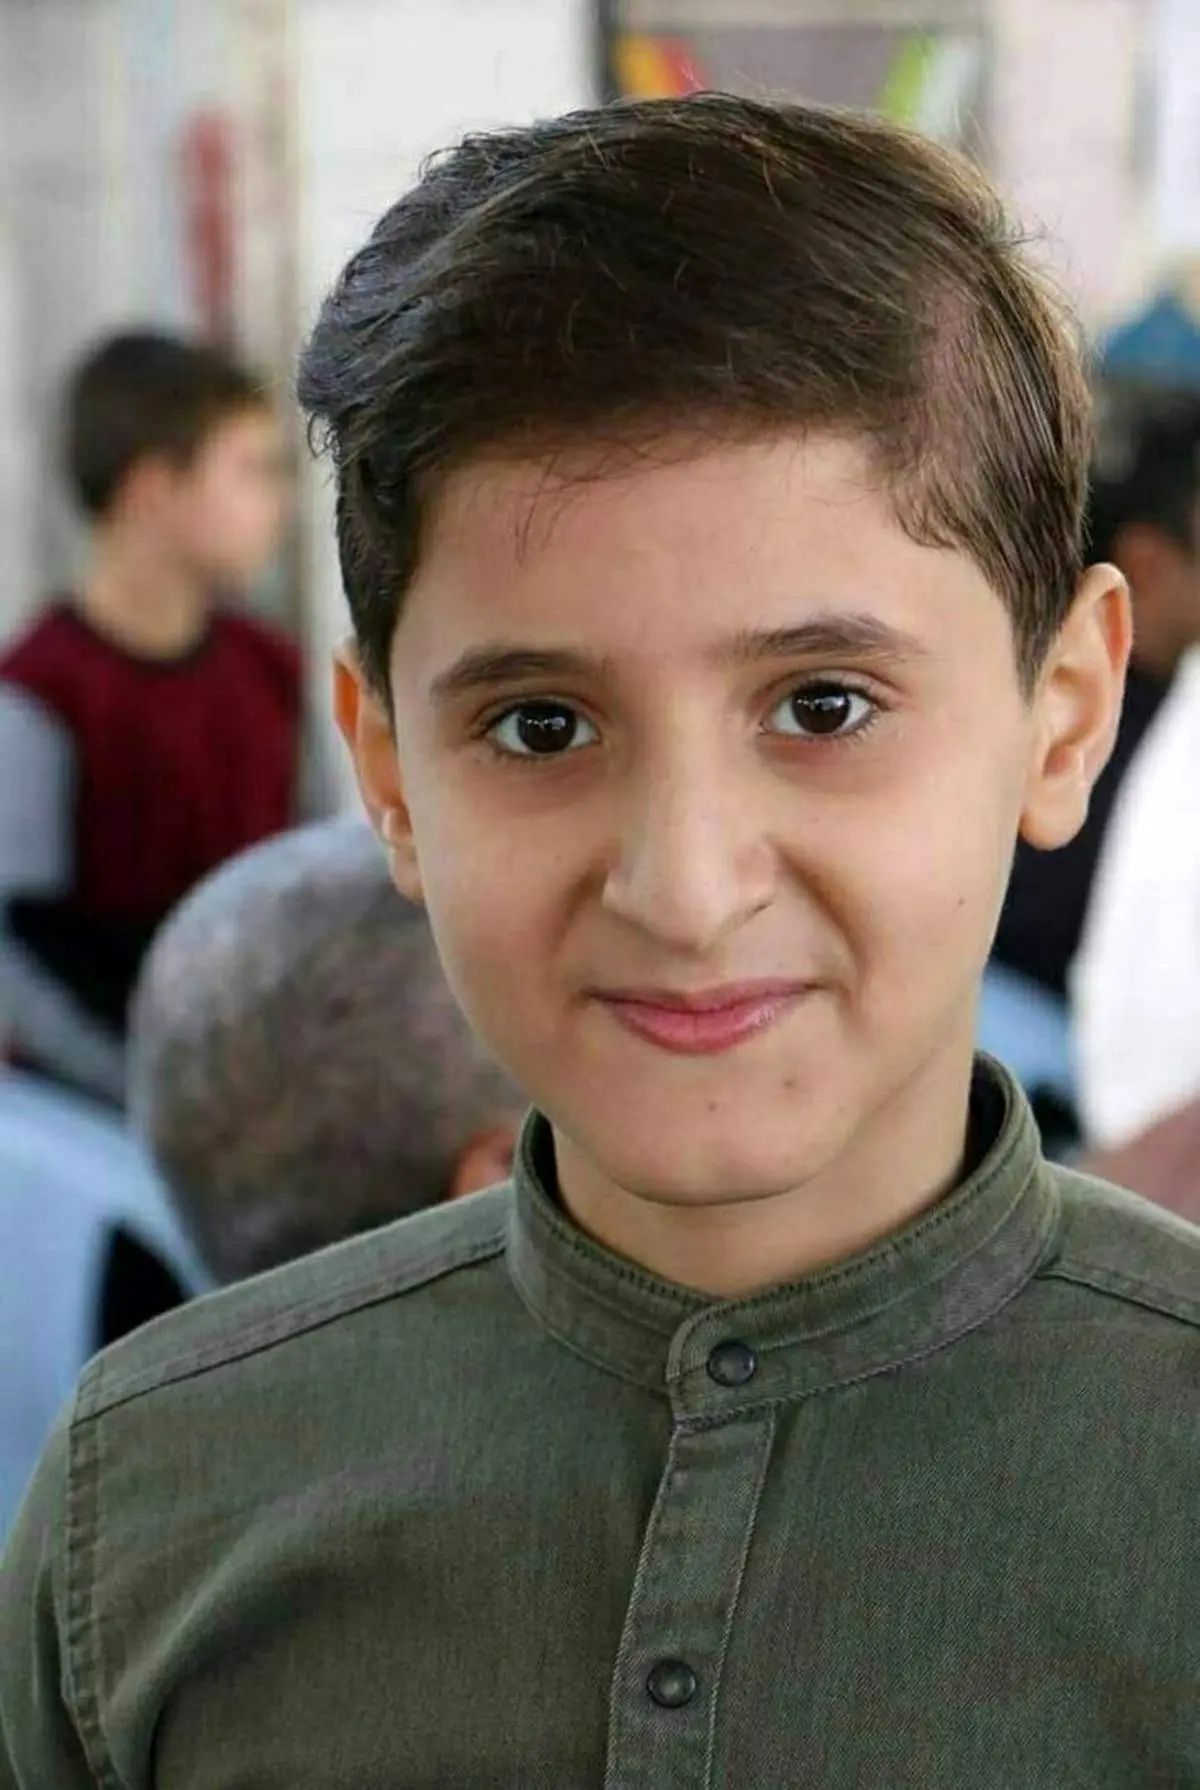 (ویدئو)ابراز تاسف برای شهید «عونی الدوس»کودک 12 ساله فلسطینی